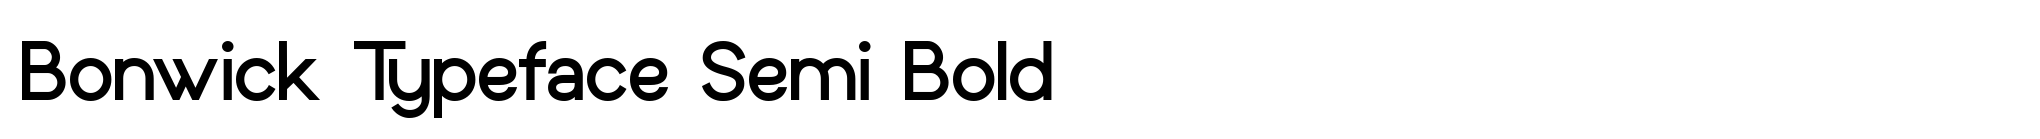 Bonwick Typeface Semi Bold image